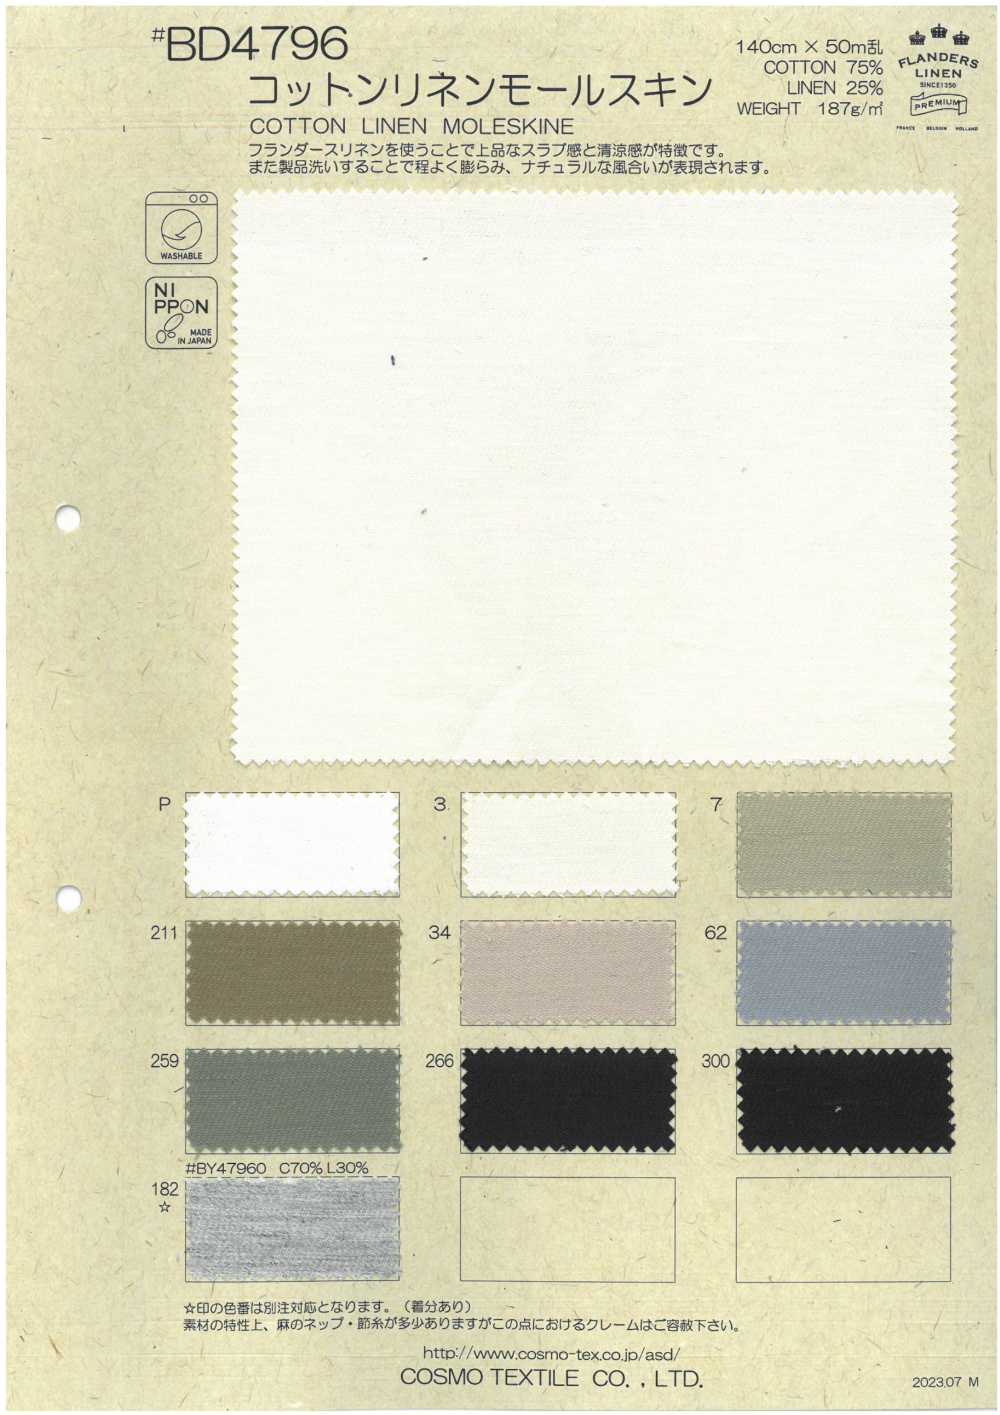 BD4796 Cotton Linen Moleskin[Textile / Fabric] COSMO TEXTILE